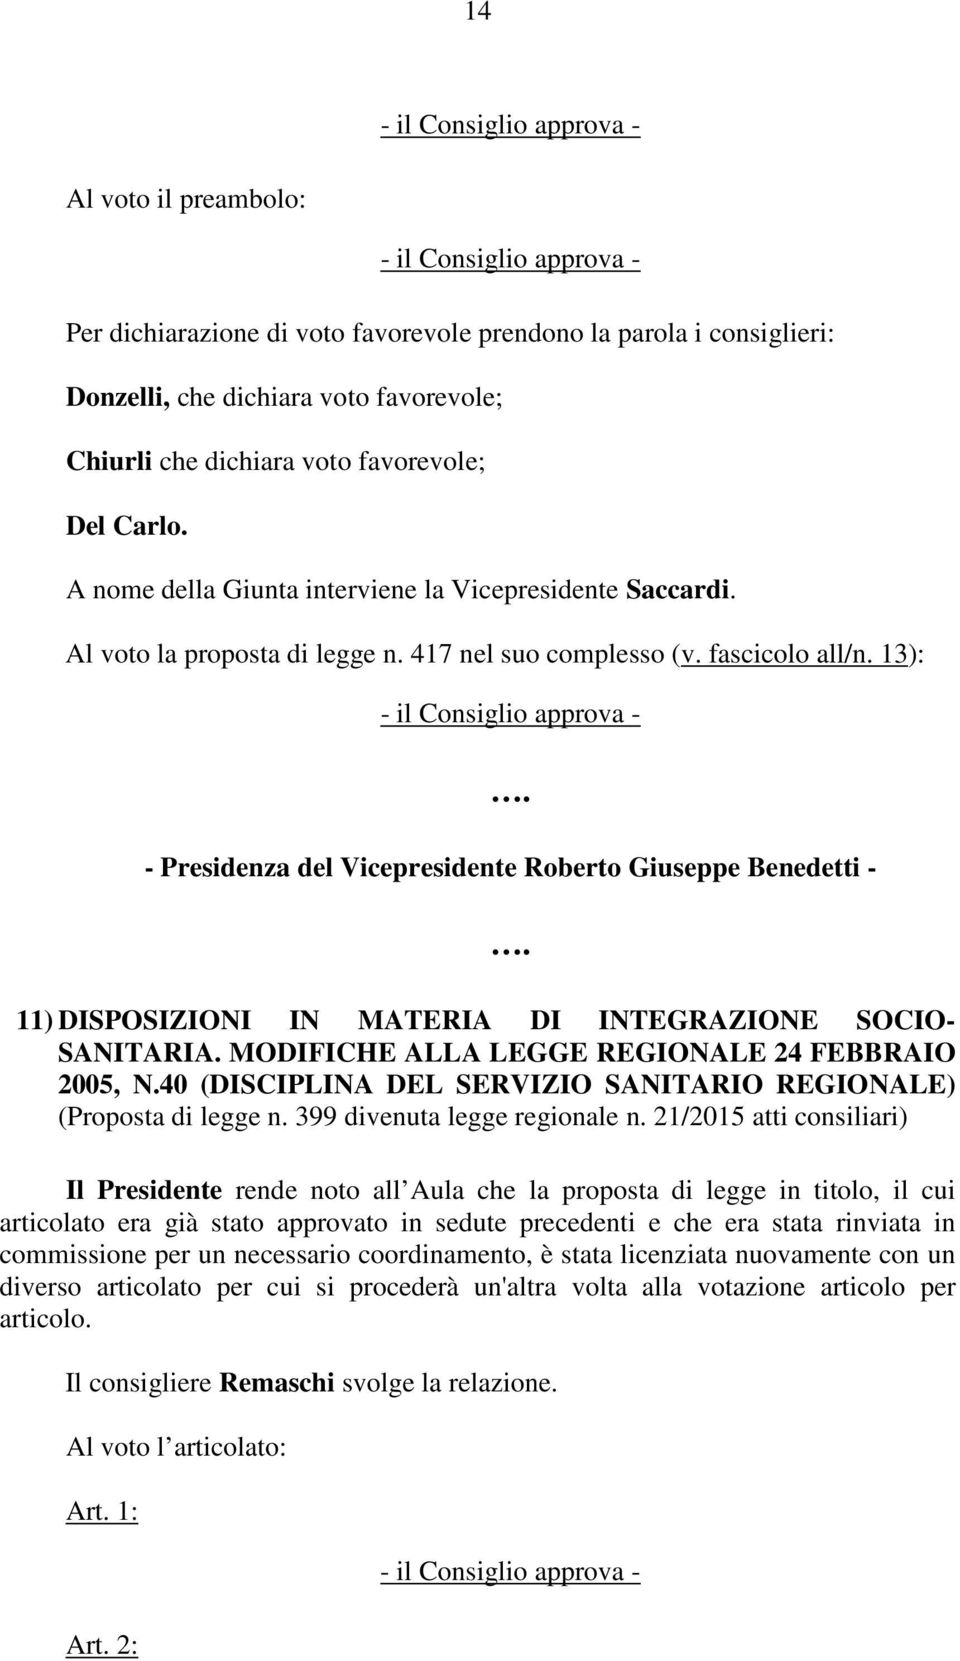 13): - Presidenza del Vicepresidente Roberto Giuseppe Benedetti - 11) DISPOSIZIONI IN MATERIA DI INTEGRAZIONE SOCIO- SANITARIA. MODIFICHE ALLA LEGGE REGIONALE 24 FEBBRAIO 2005, N.